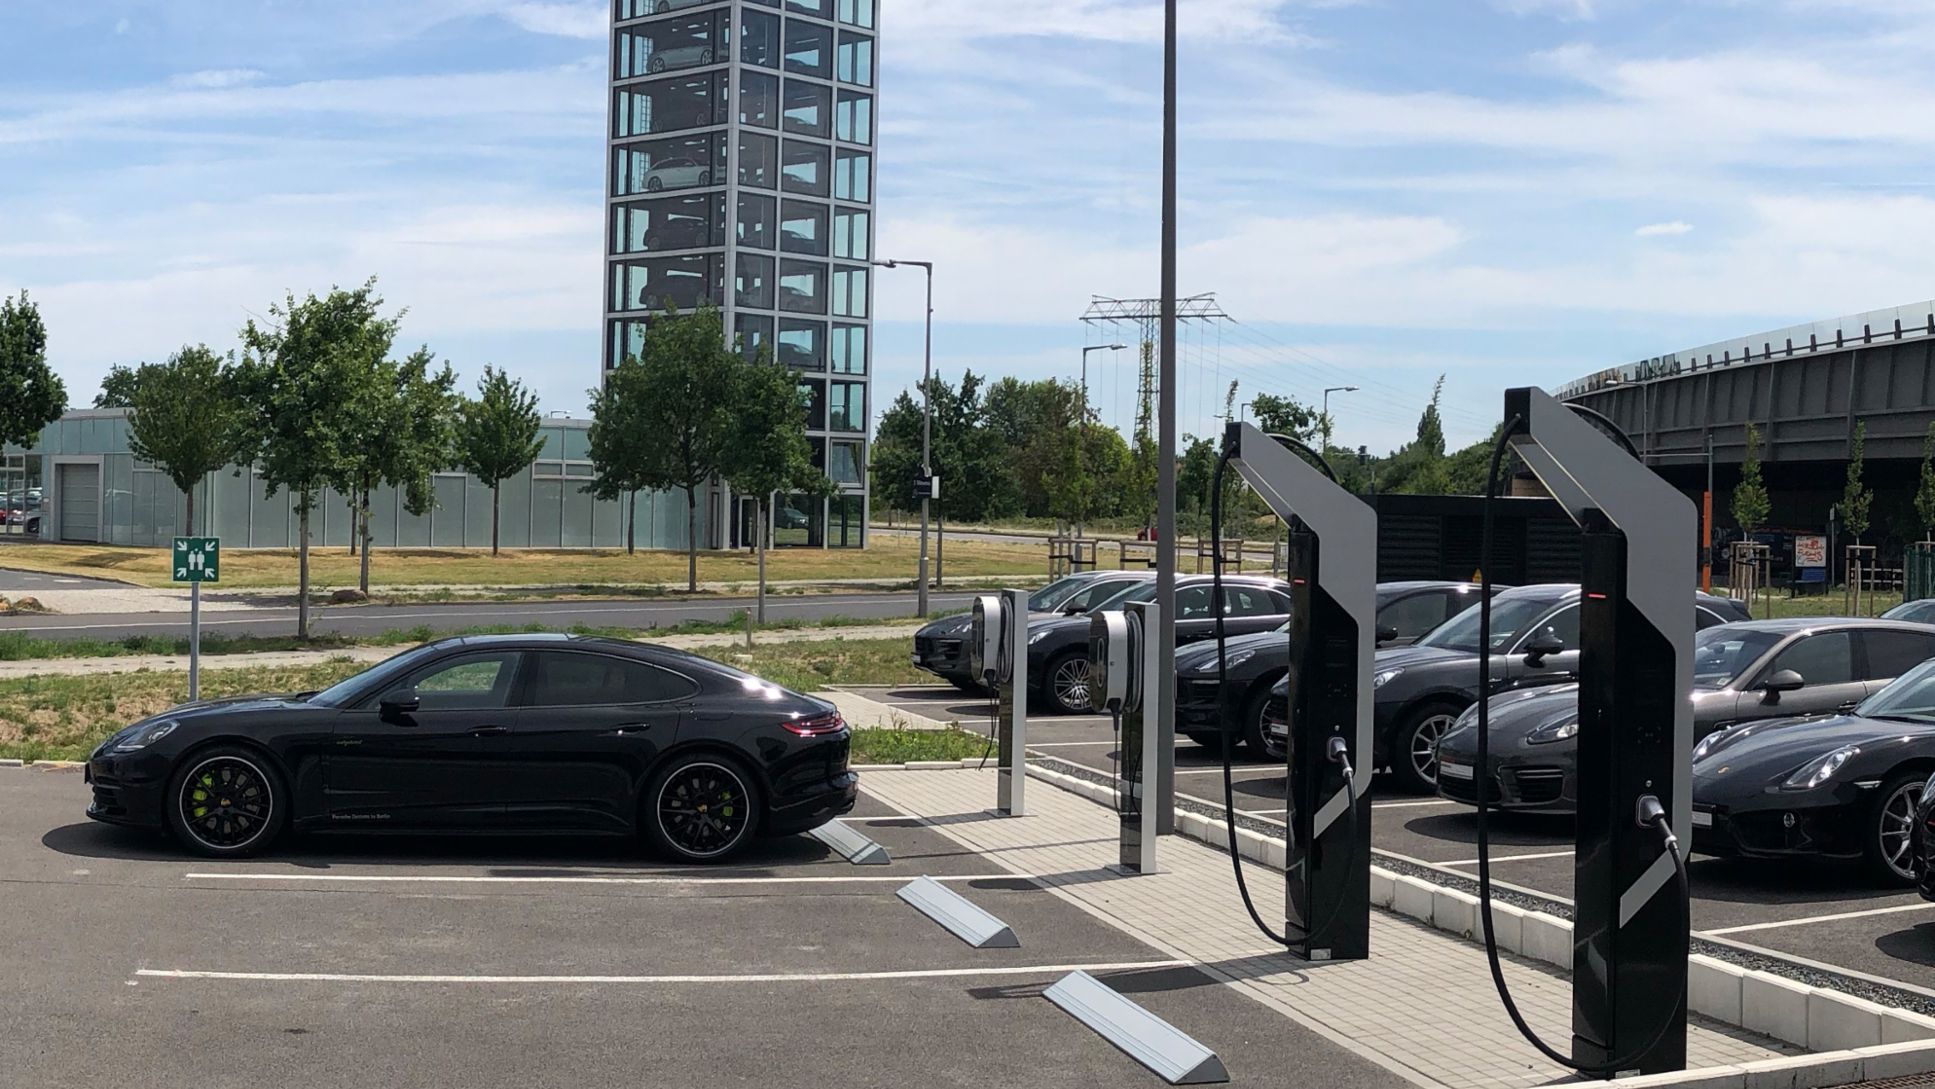 Estación de carga rápida Porsche, Berlín-Adlershof, 2018, Porsche AG